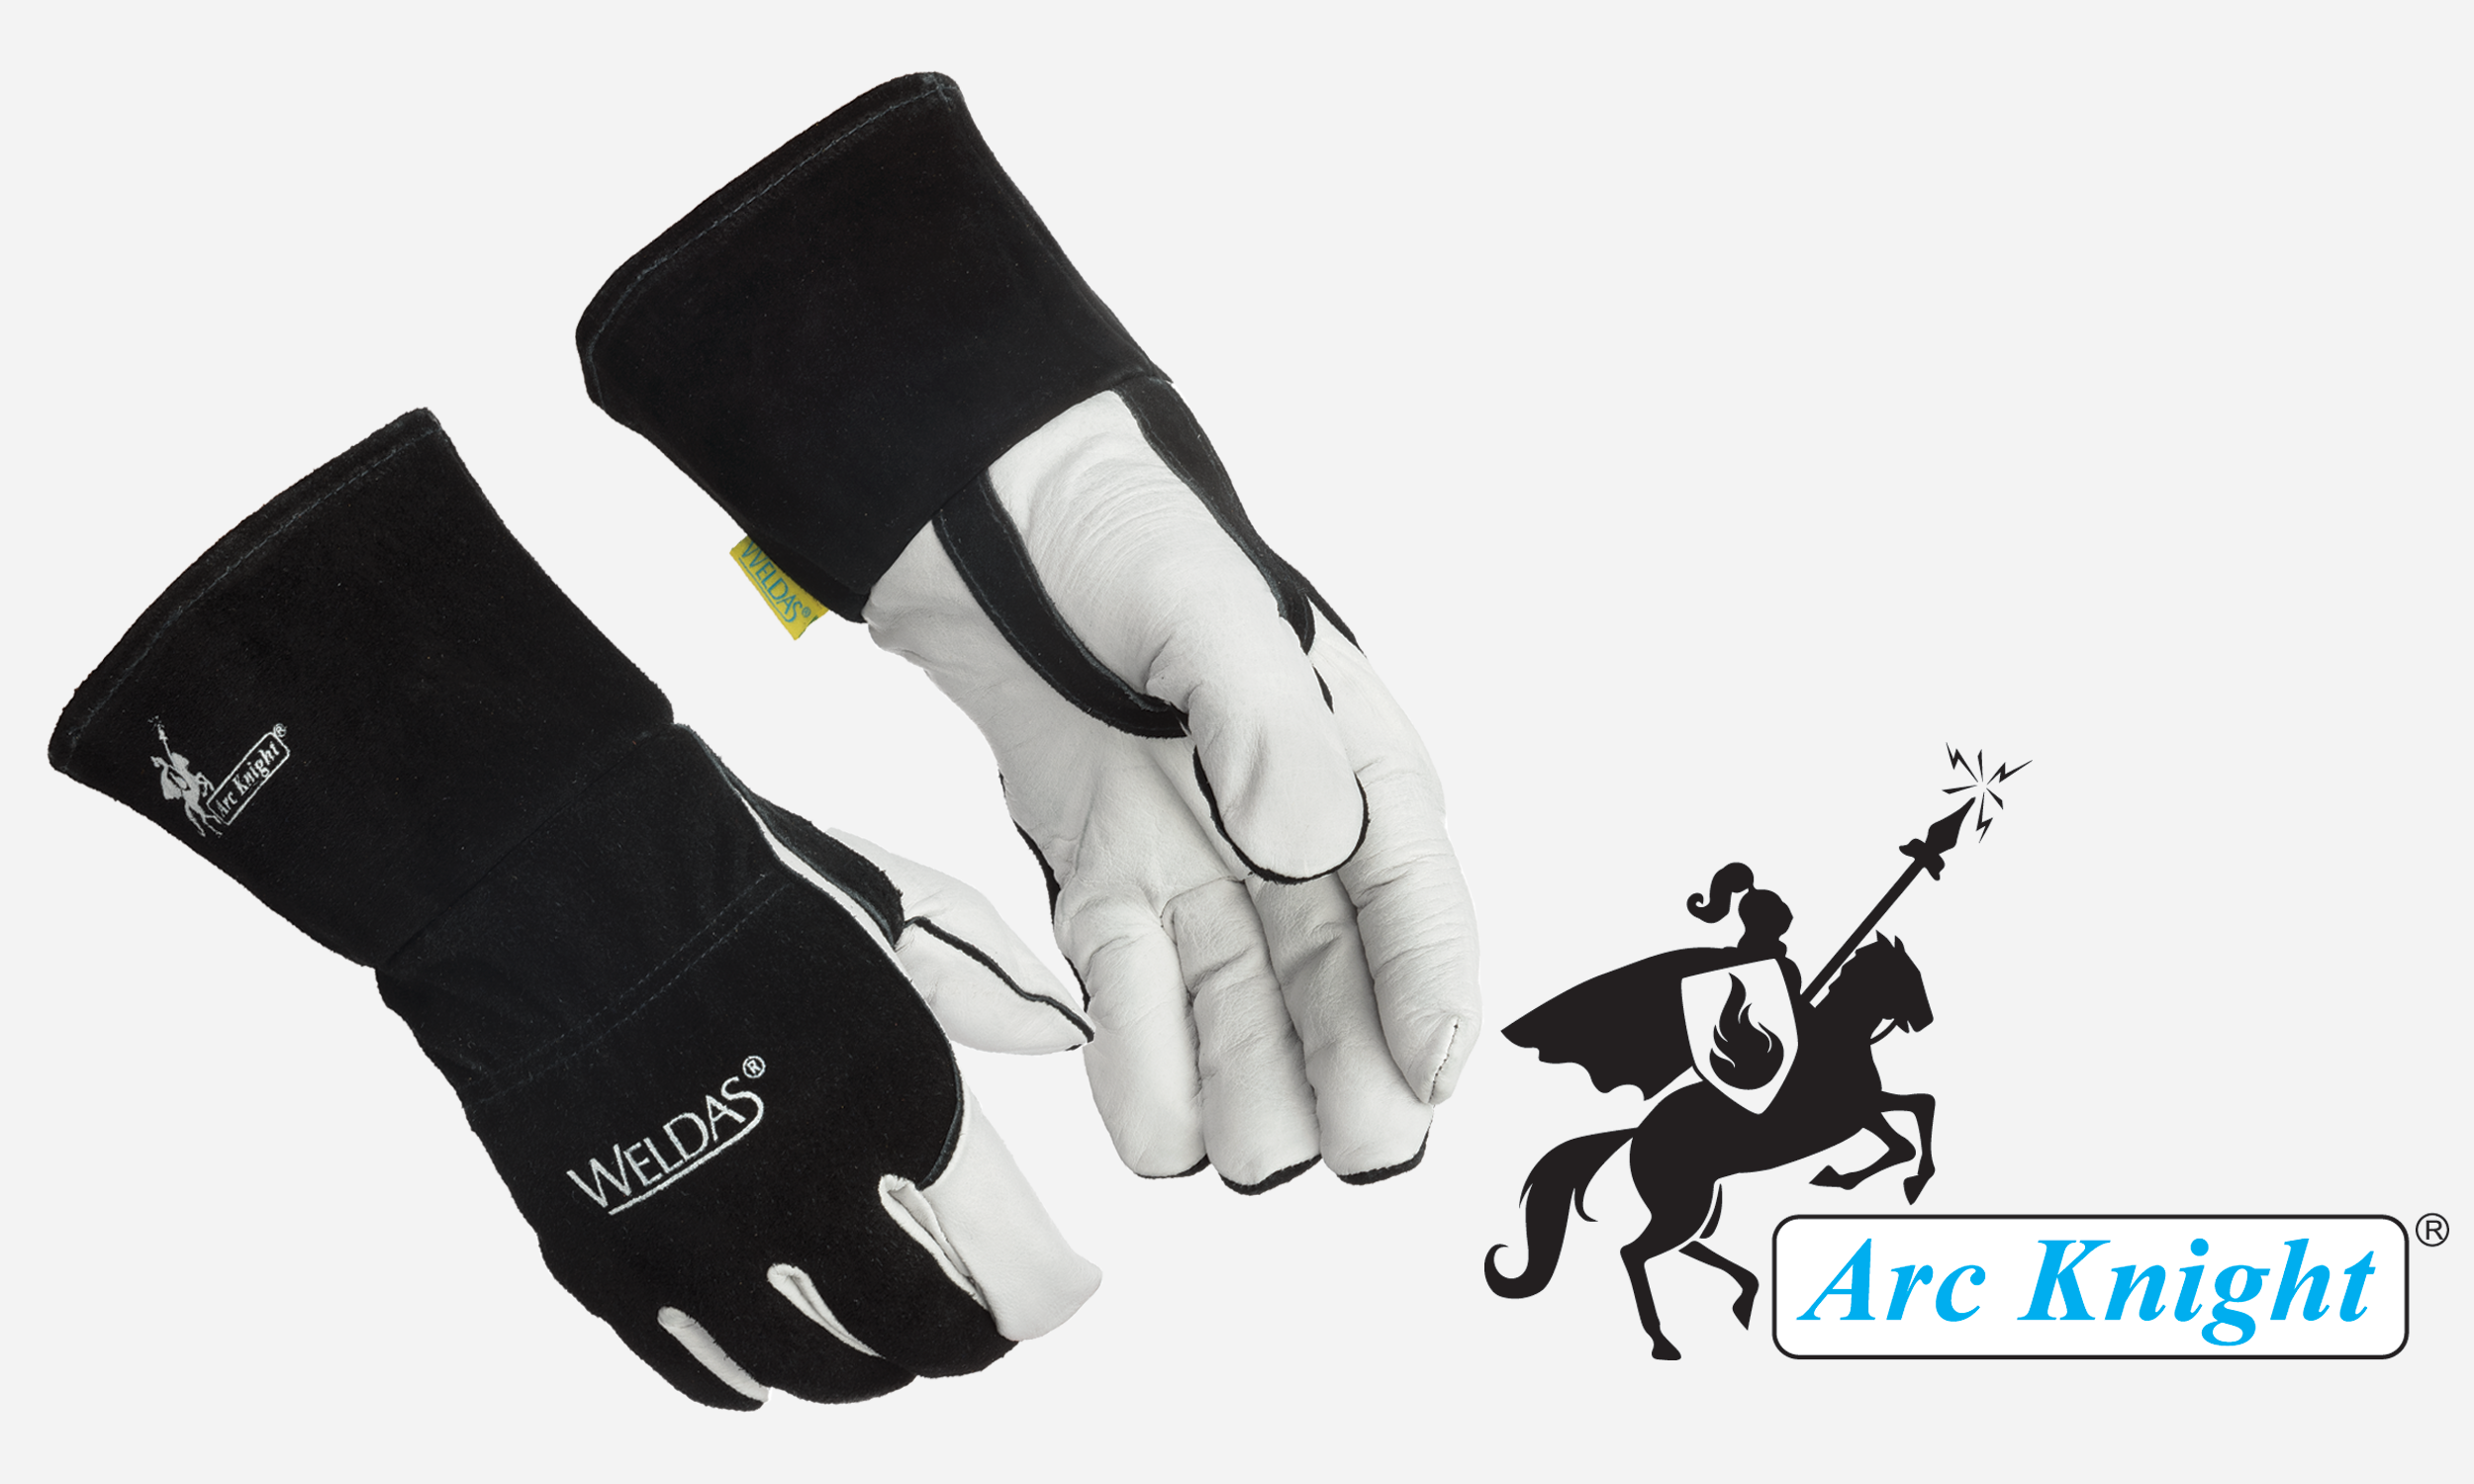 Size L Weldas Arc Knight MIG/Stick Welding Glove 100% Cotton Lining Kevlar Sewn 